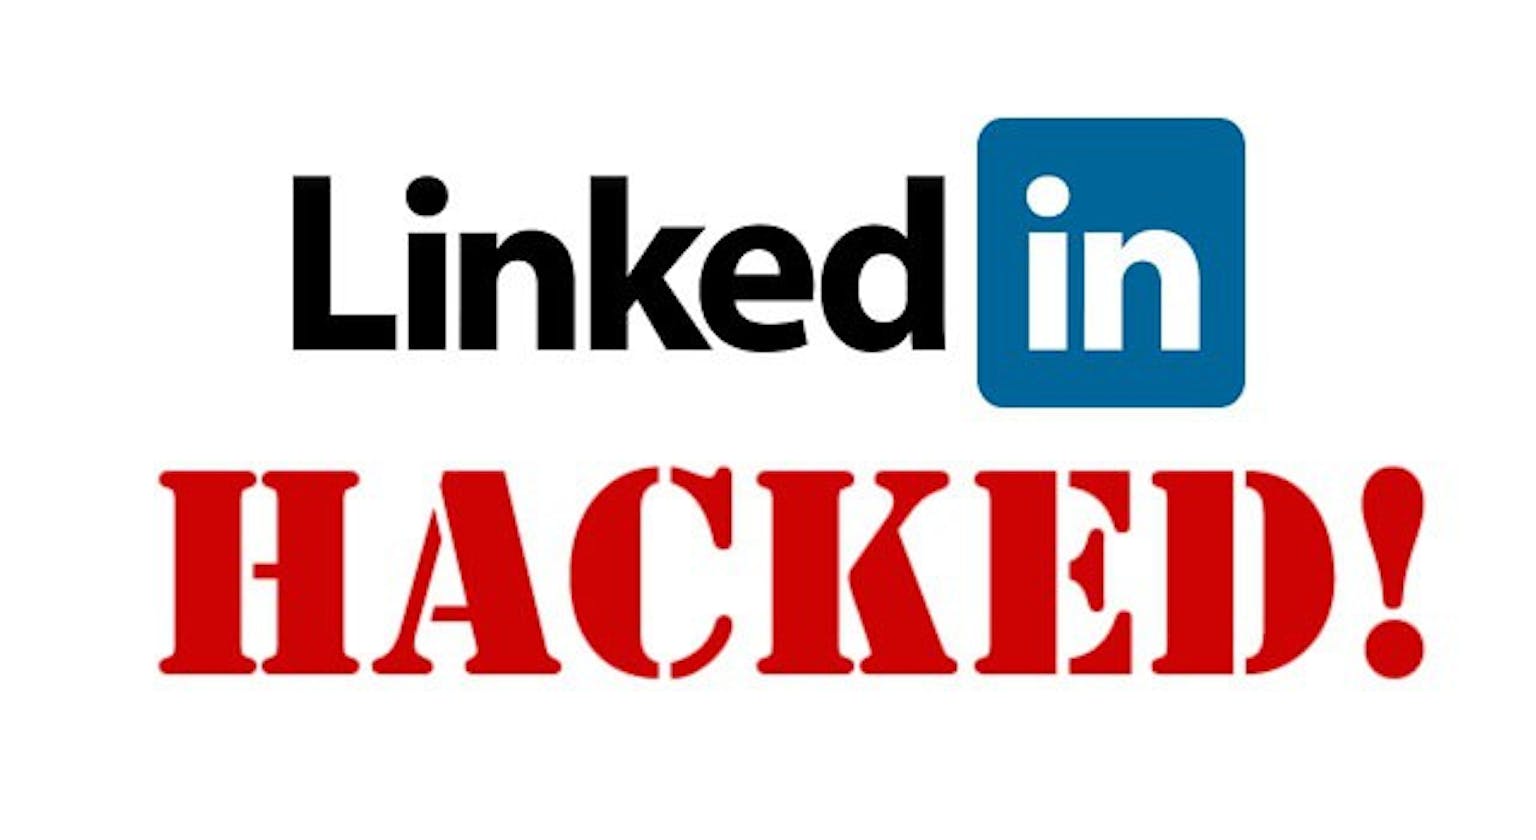 LinkedIn Data Breach: Analyzing the 2012 breach resulting in stolen user credentials.